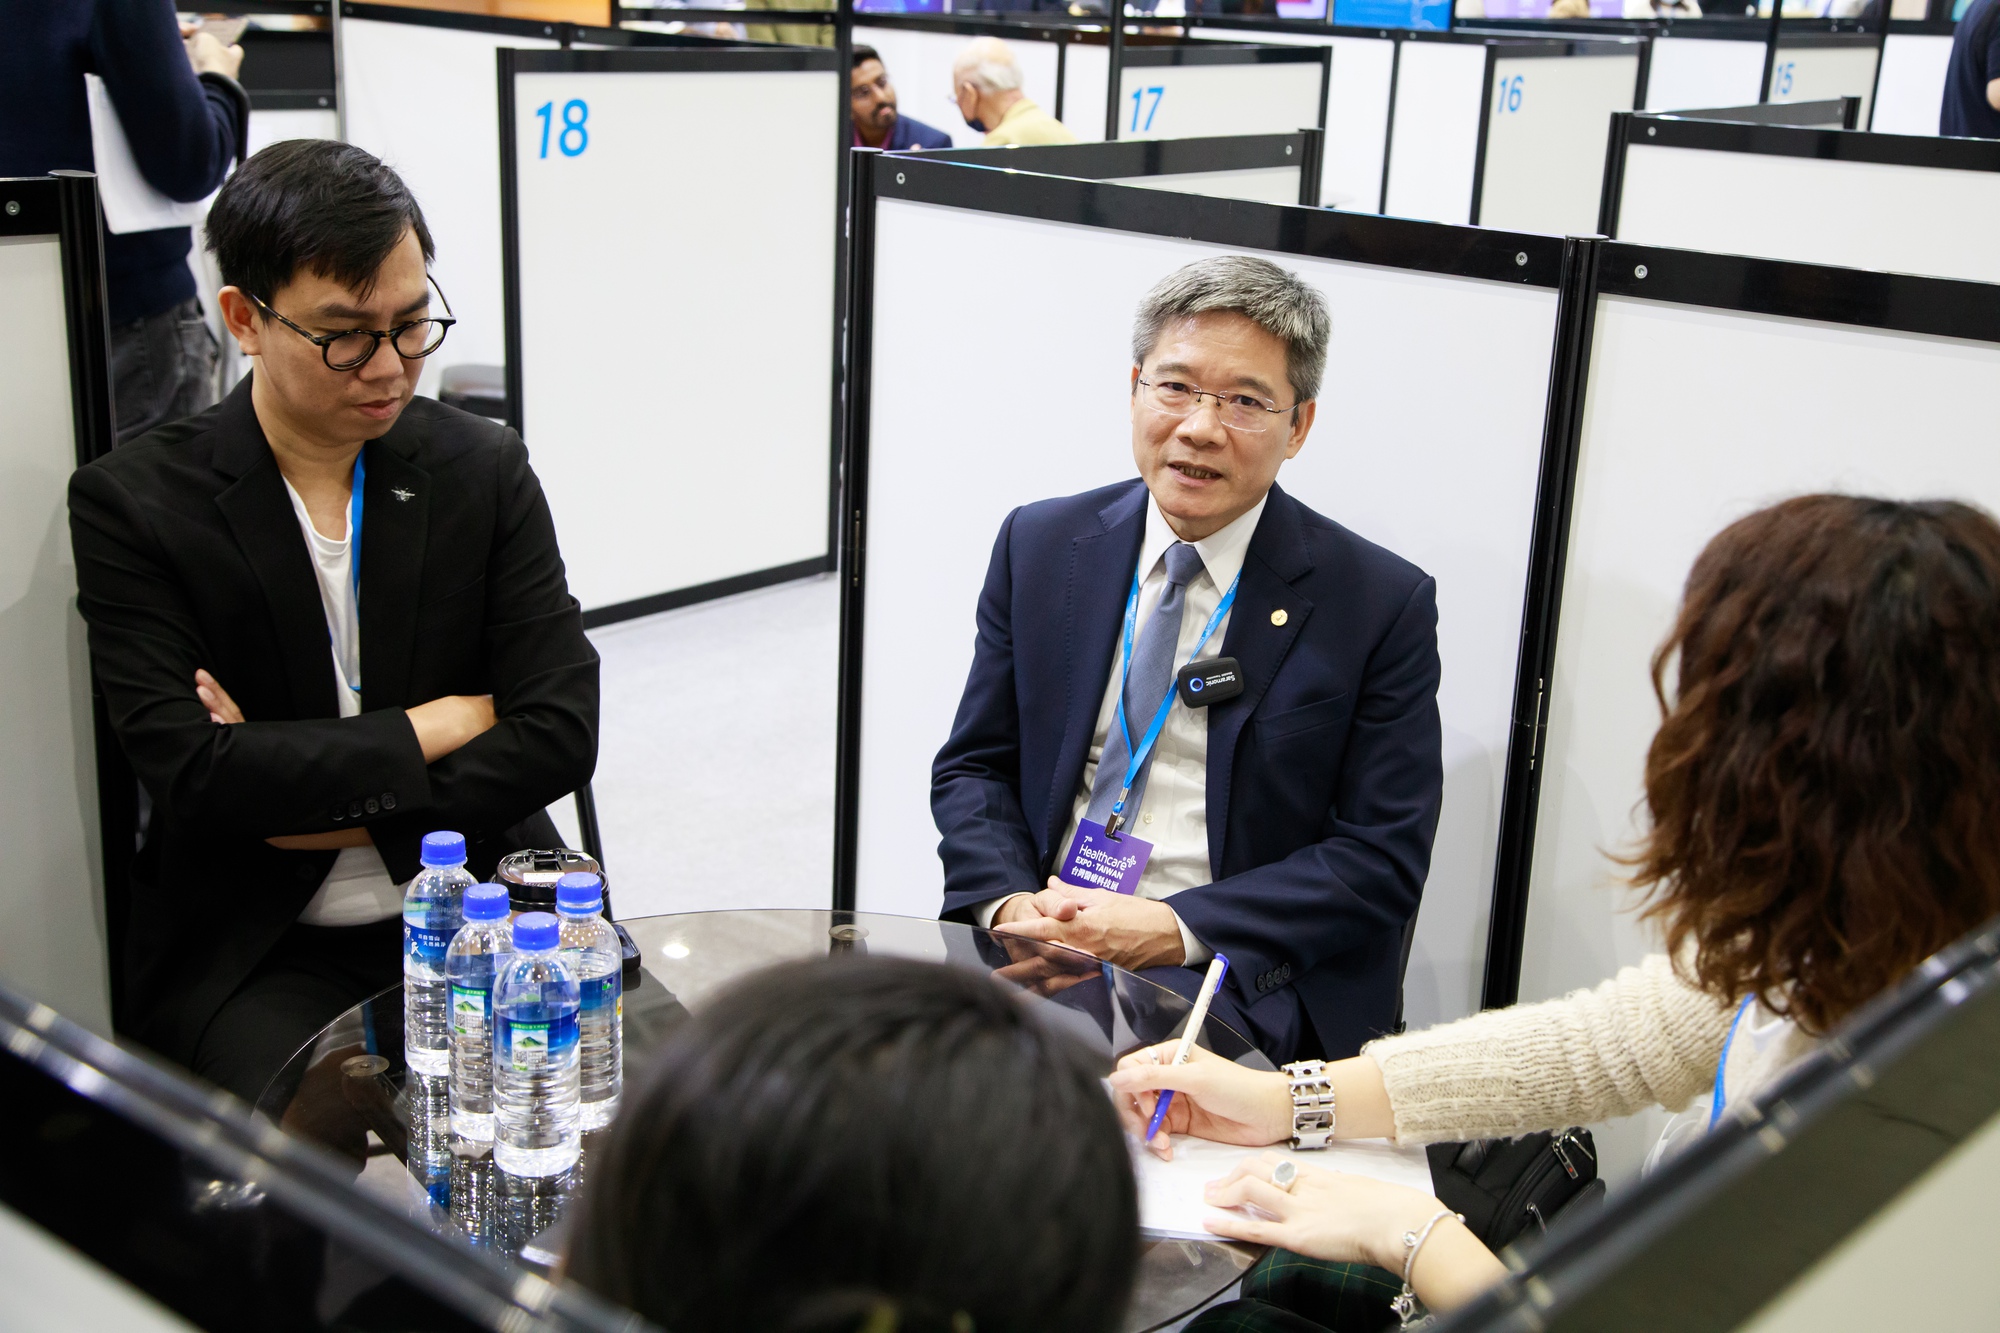 AI tiếp tục gây sốt ở hội chợ công nghệ sức khỏe lớn nhất châu Á  - Ảnh 6.